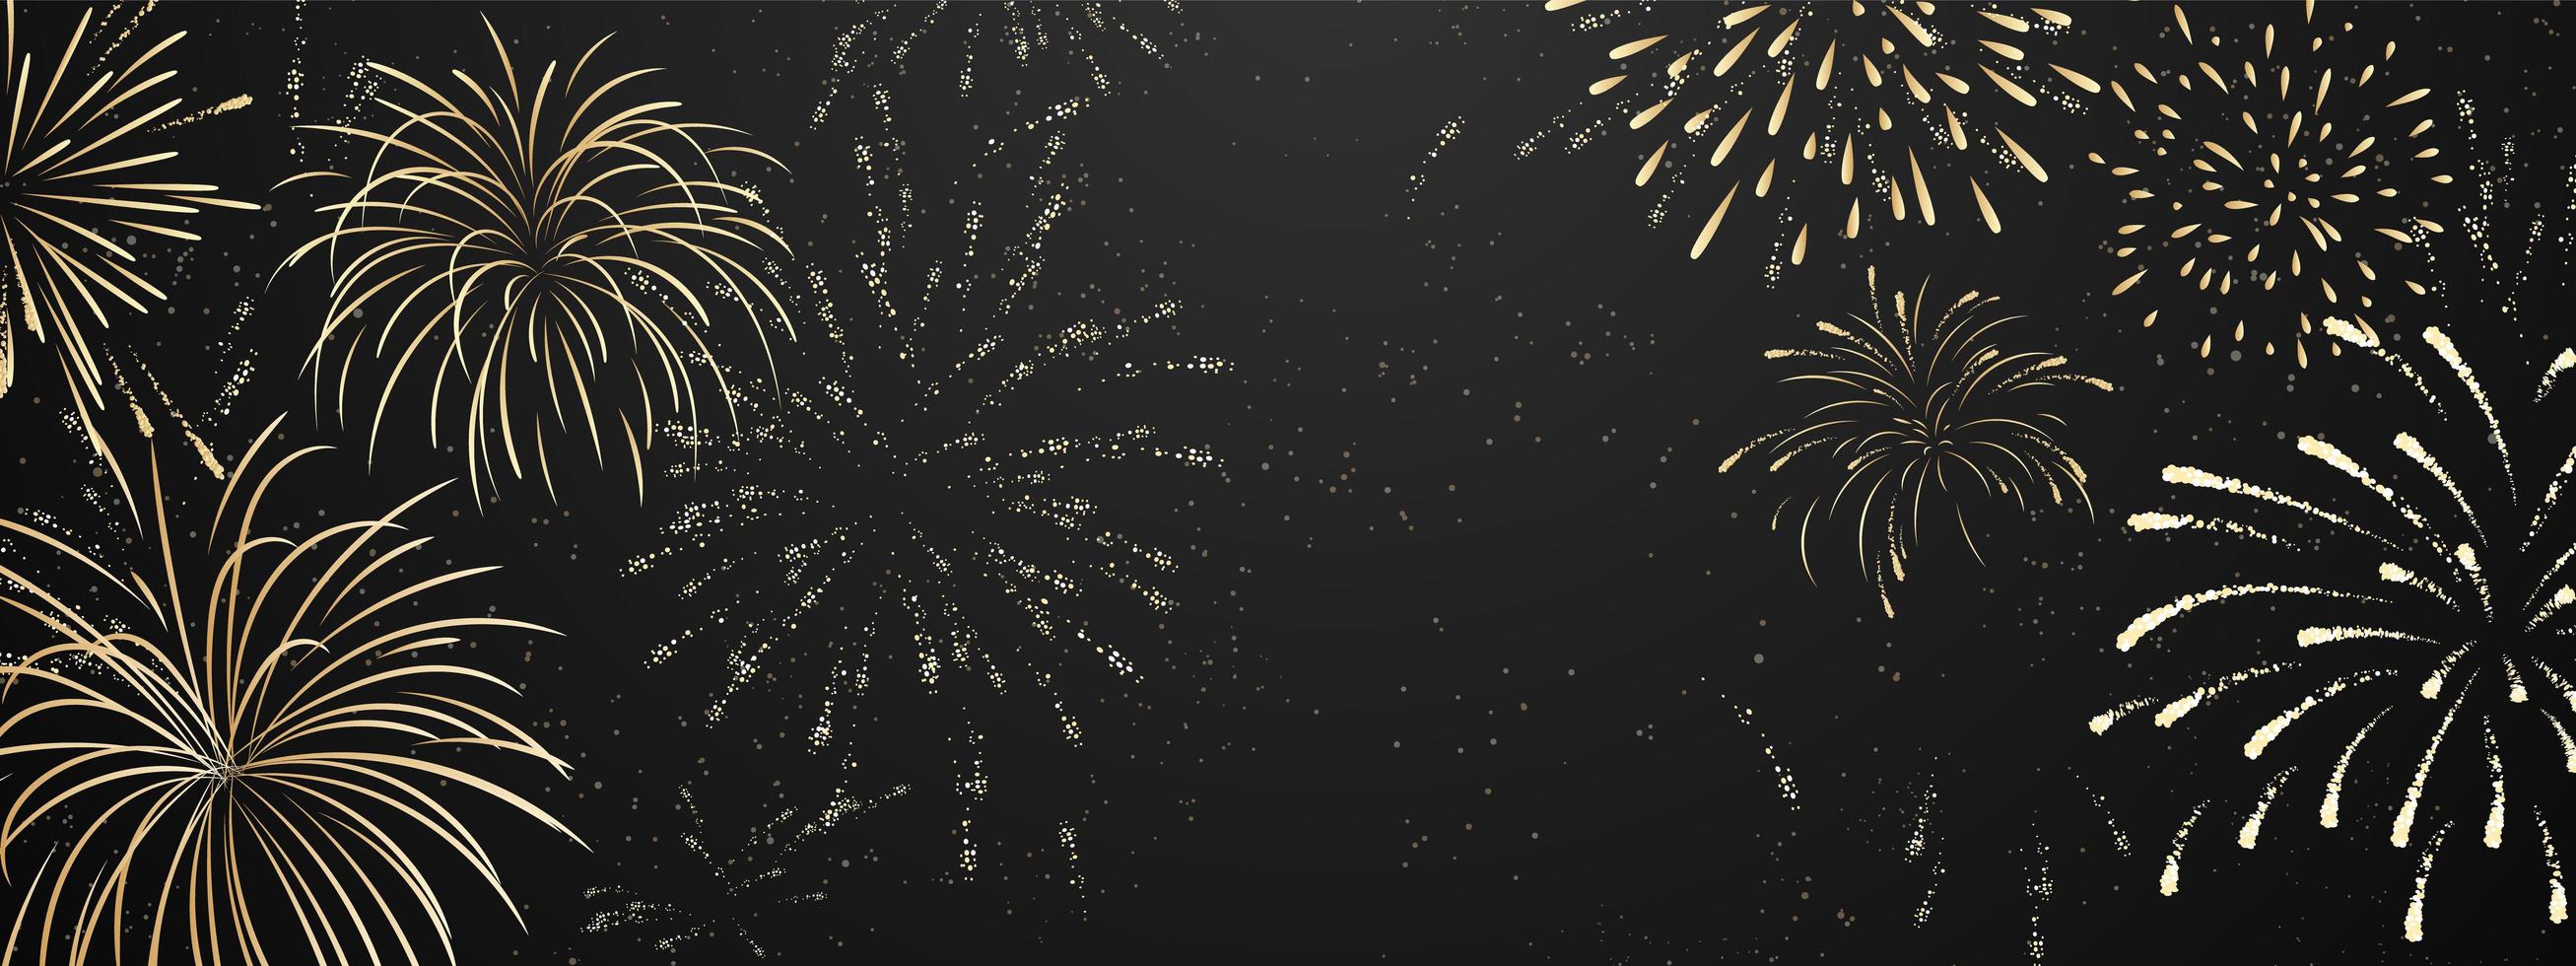 Feuerwerk und Weihnachten themenorientierte Feier Party frohes neues Jahr Gold Hintergrund Design vektor